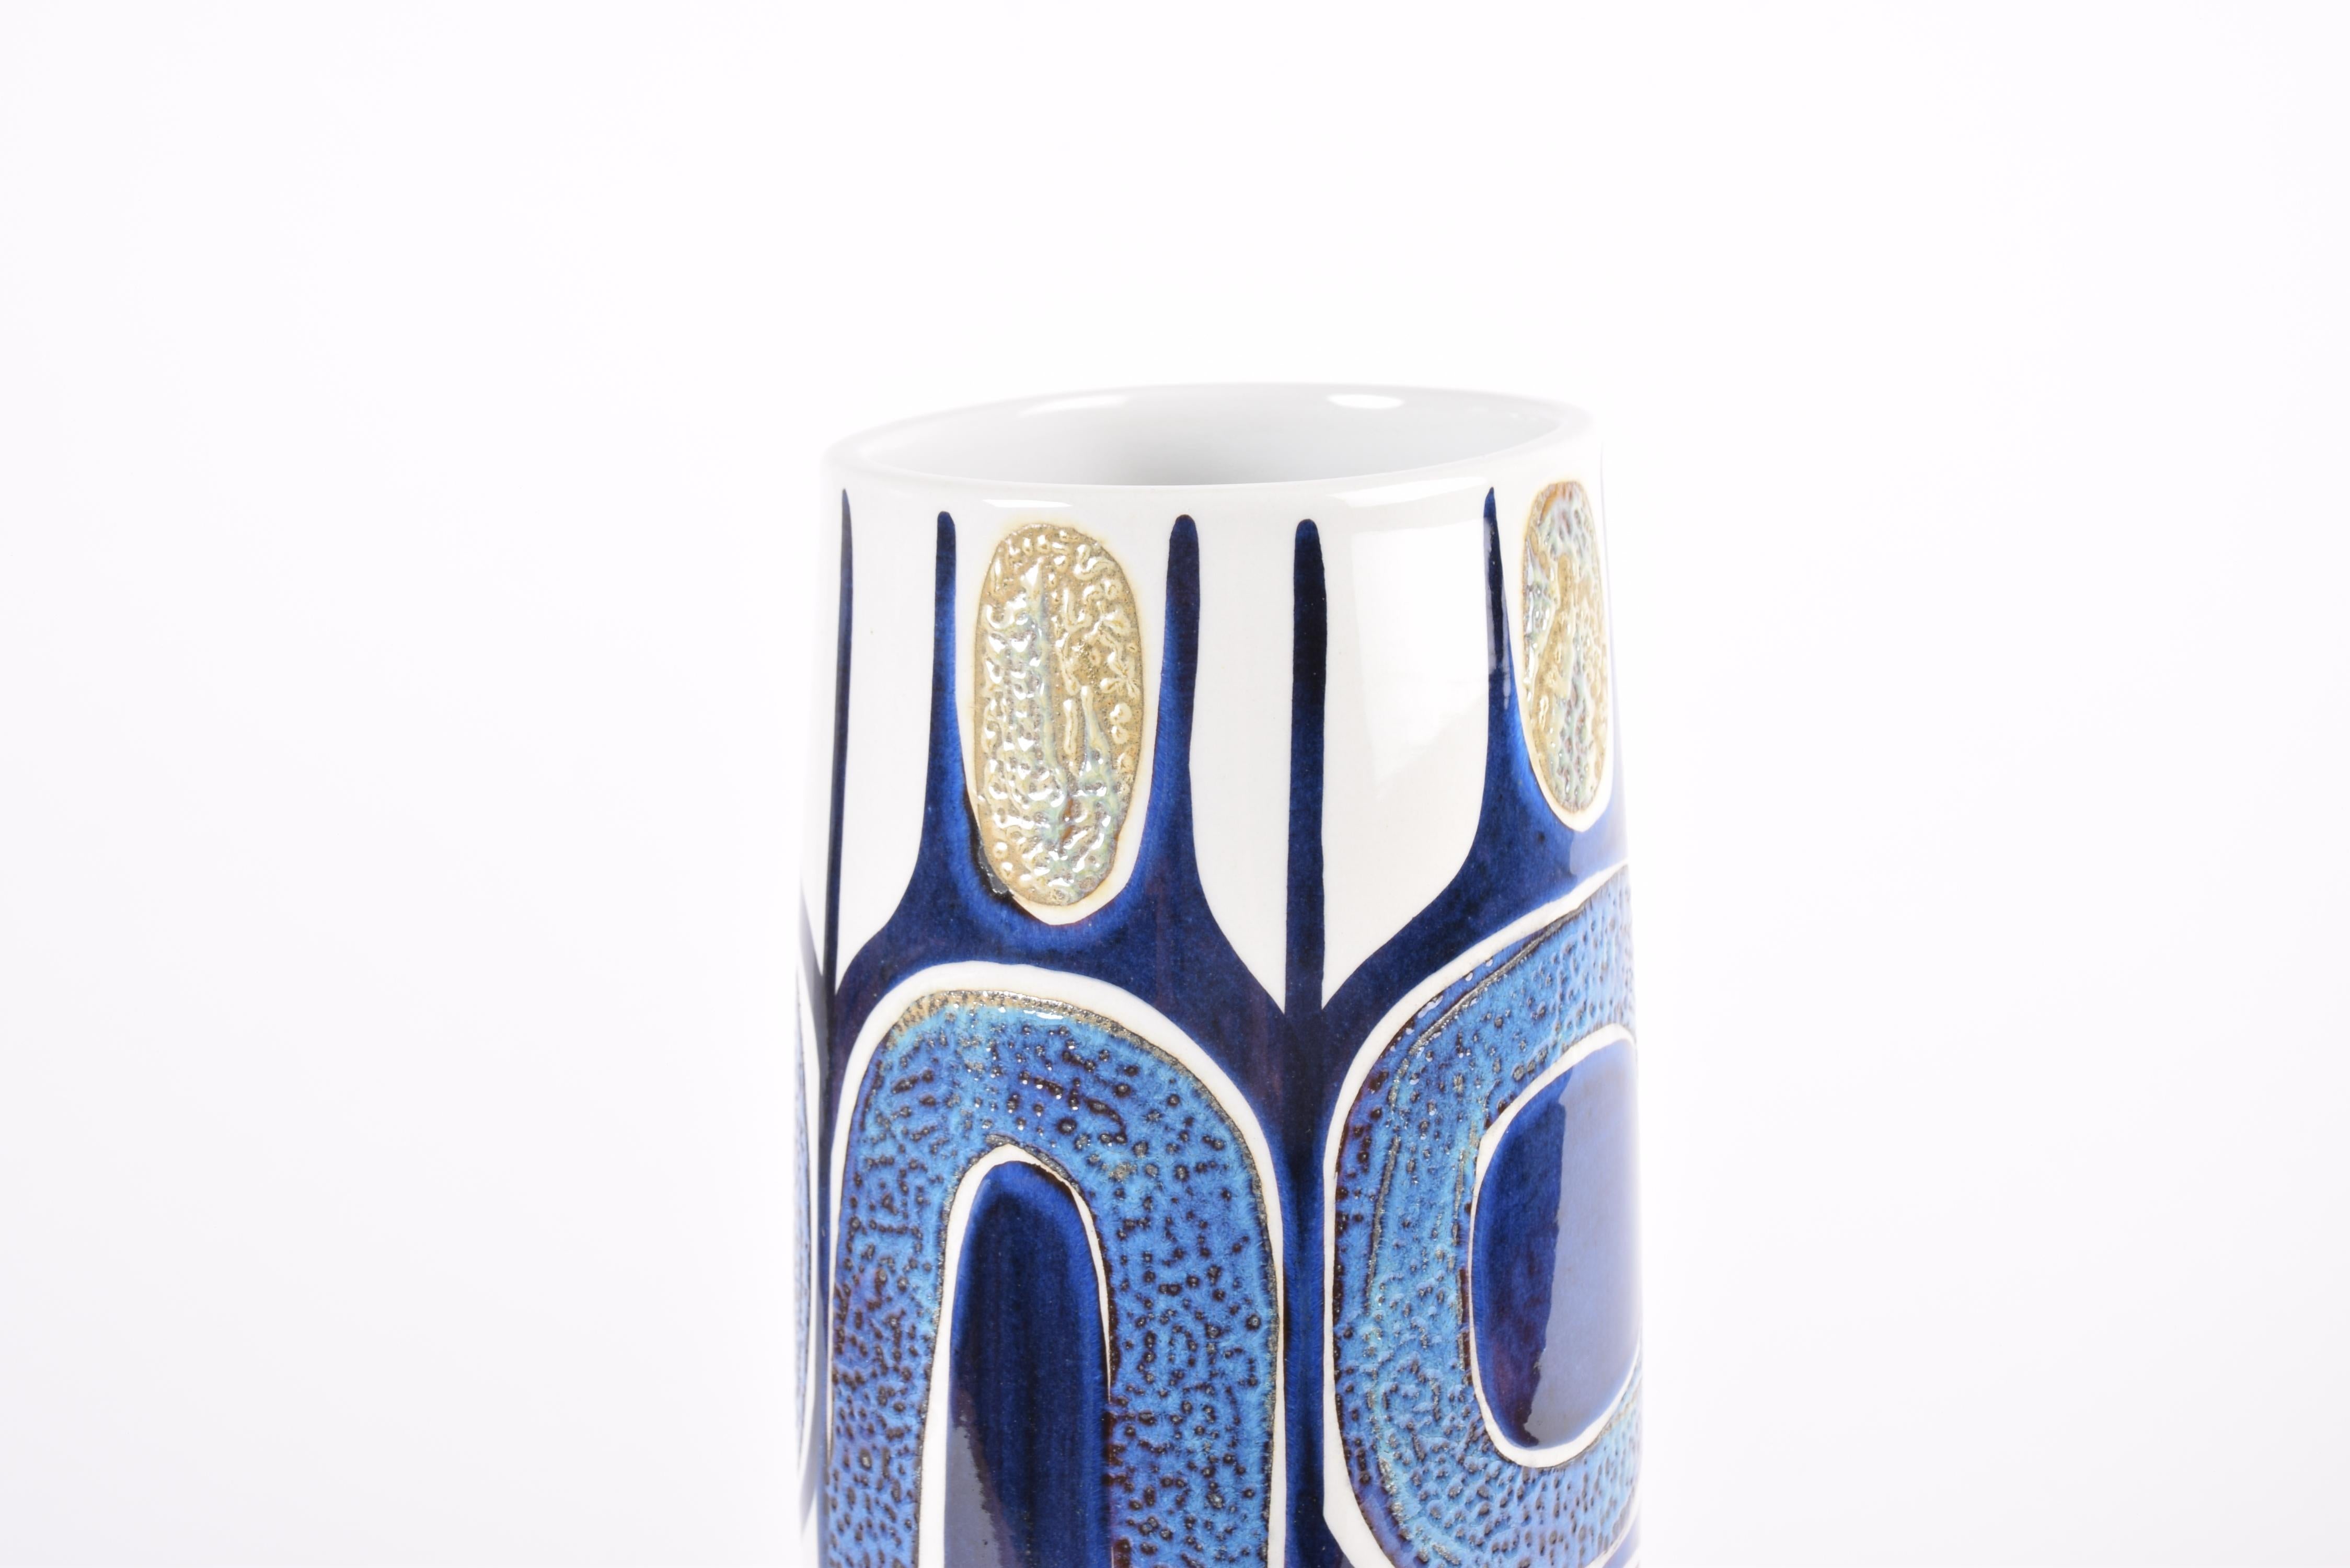 Ceramic Royal Copenhagen Tenera Tall Vase Decor by Inge-Lise Koefoed Danish Modern 1960s For Sale